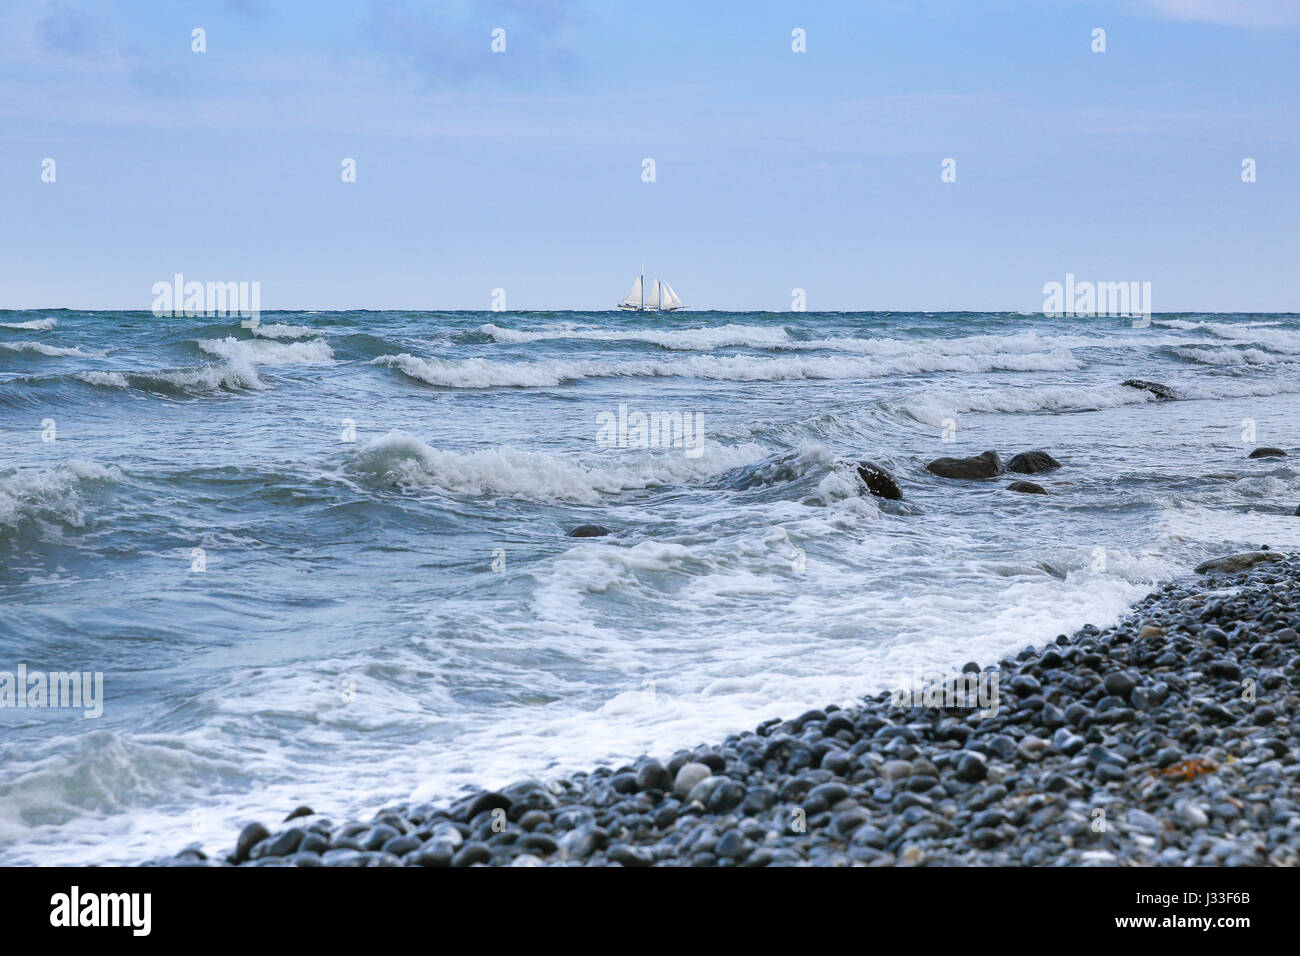 Vue sur la mer Baltique à voile à l'horizon, Mons Klint, Klintholm, Mon île, Danemark Banque D'Images